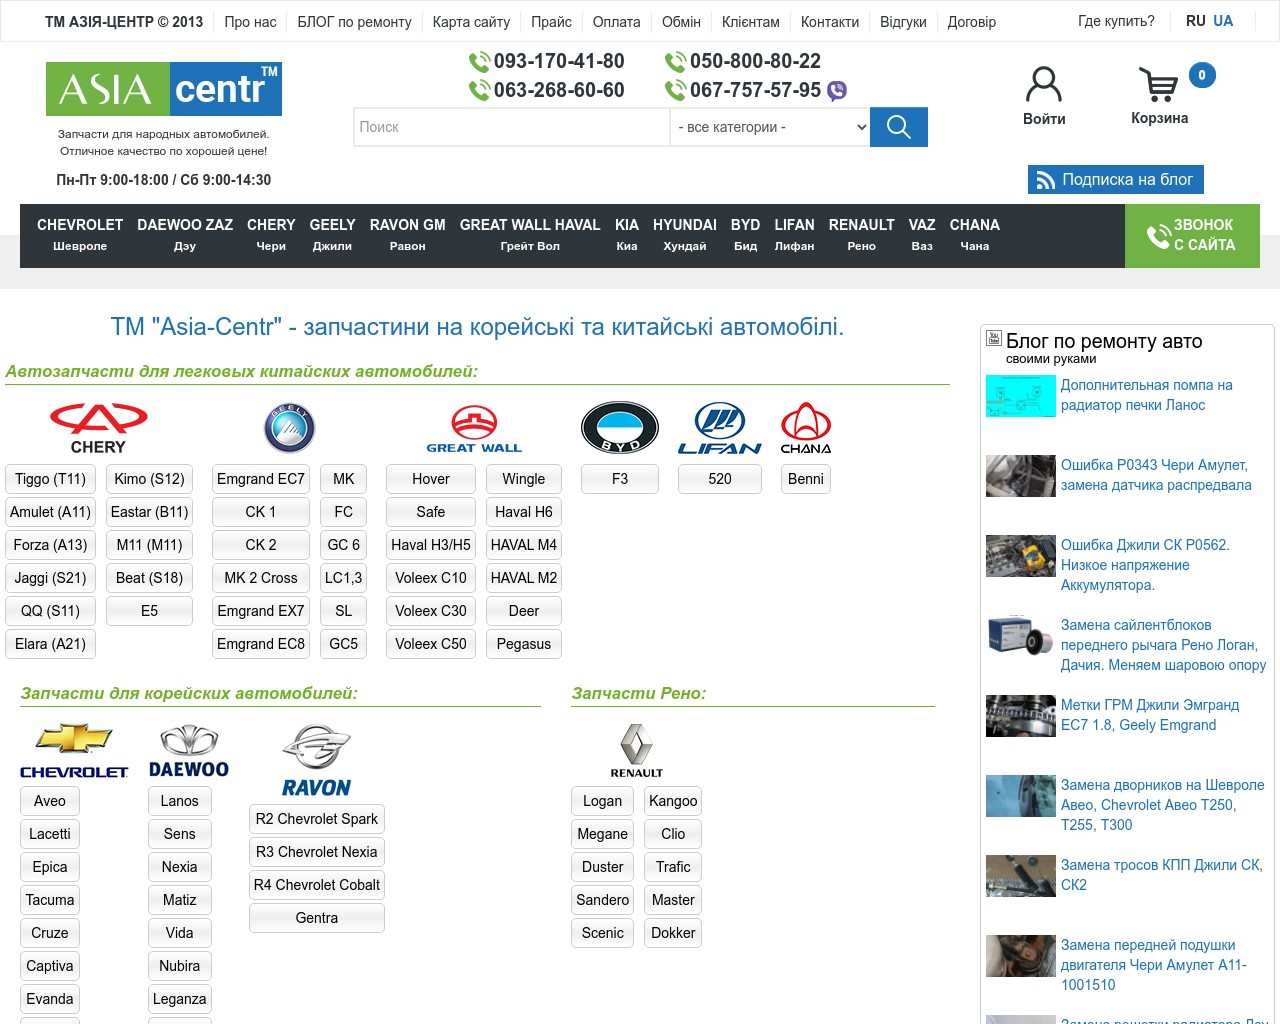 Изображение скриншота сайта - Азия Центр - интернет магазин автозапчастей для автомобилей марки Джили, Чери, Грейт Вол, Деу, Заз , Шевроле, Бид, Лифан.